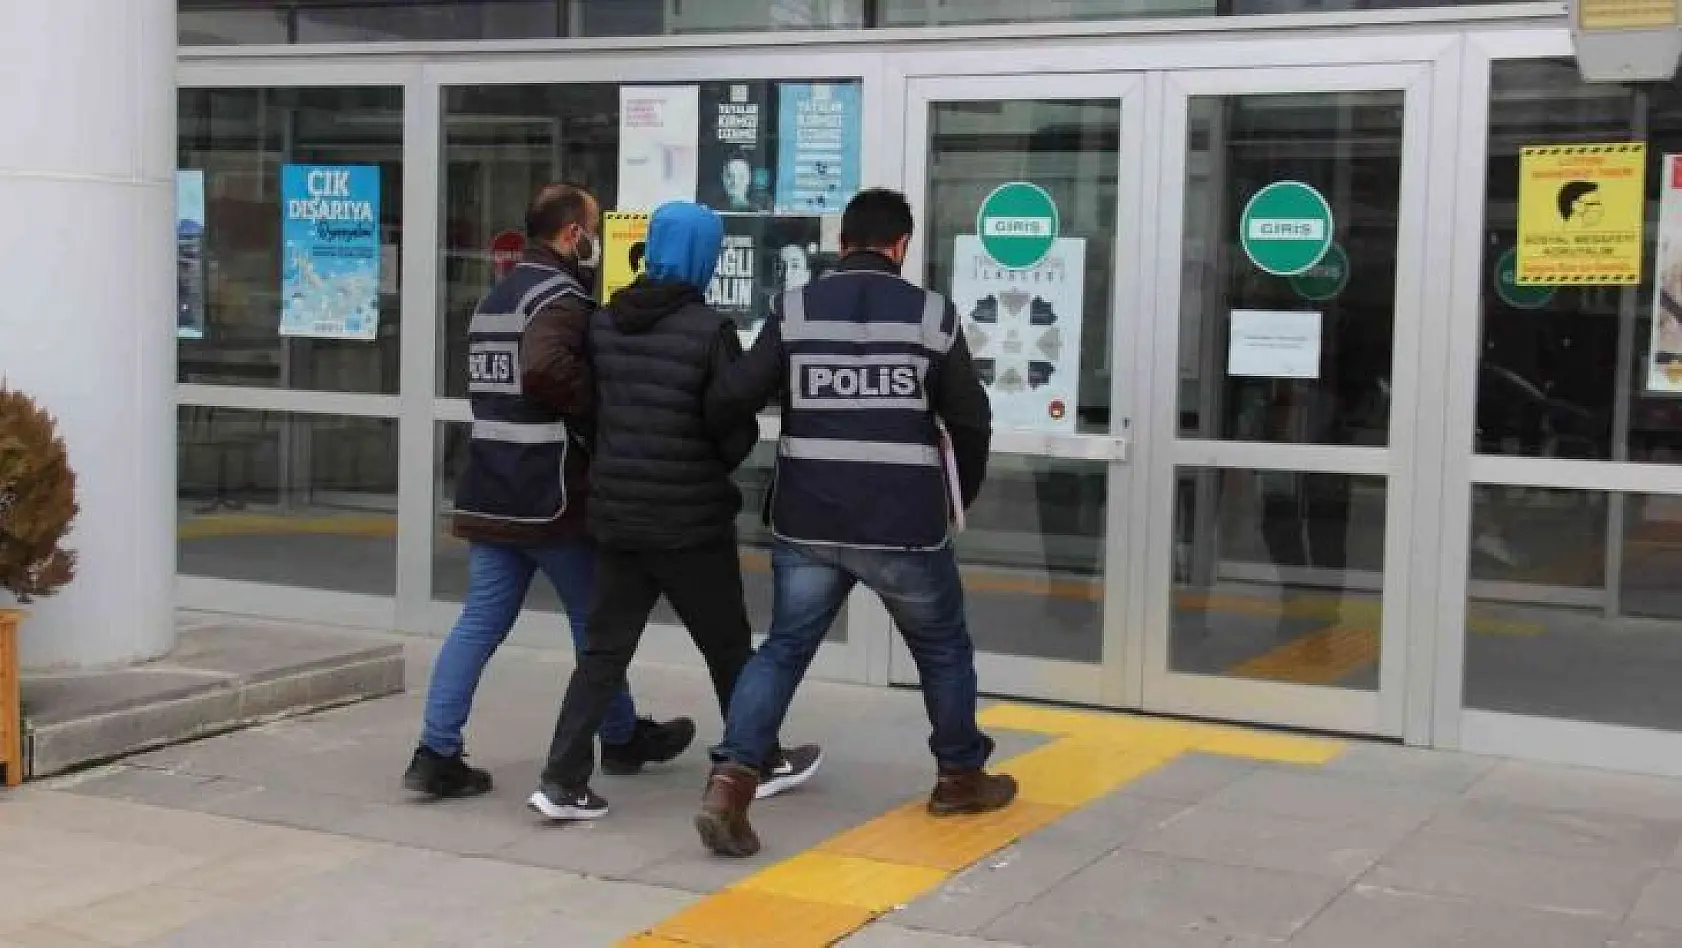 60 Bin Liralık İnşaat Malzemesi Çalan Şüpheli Polise Yakalandı